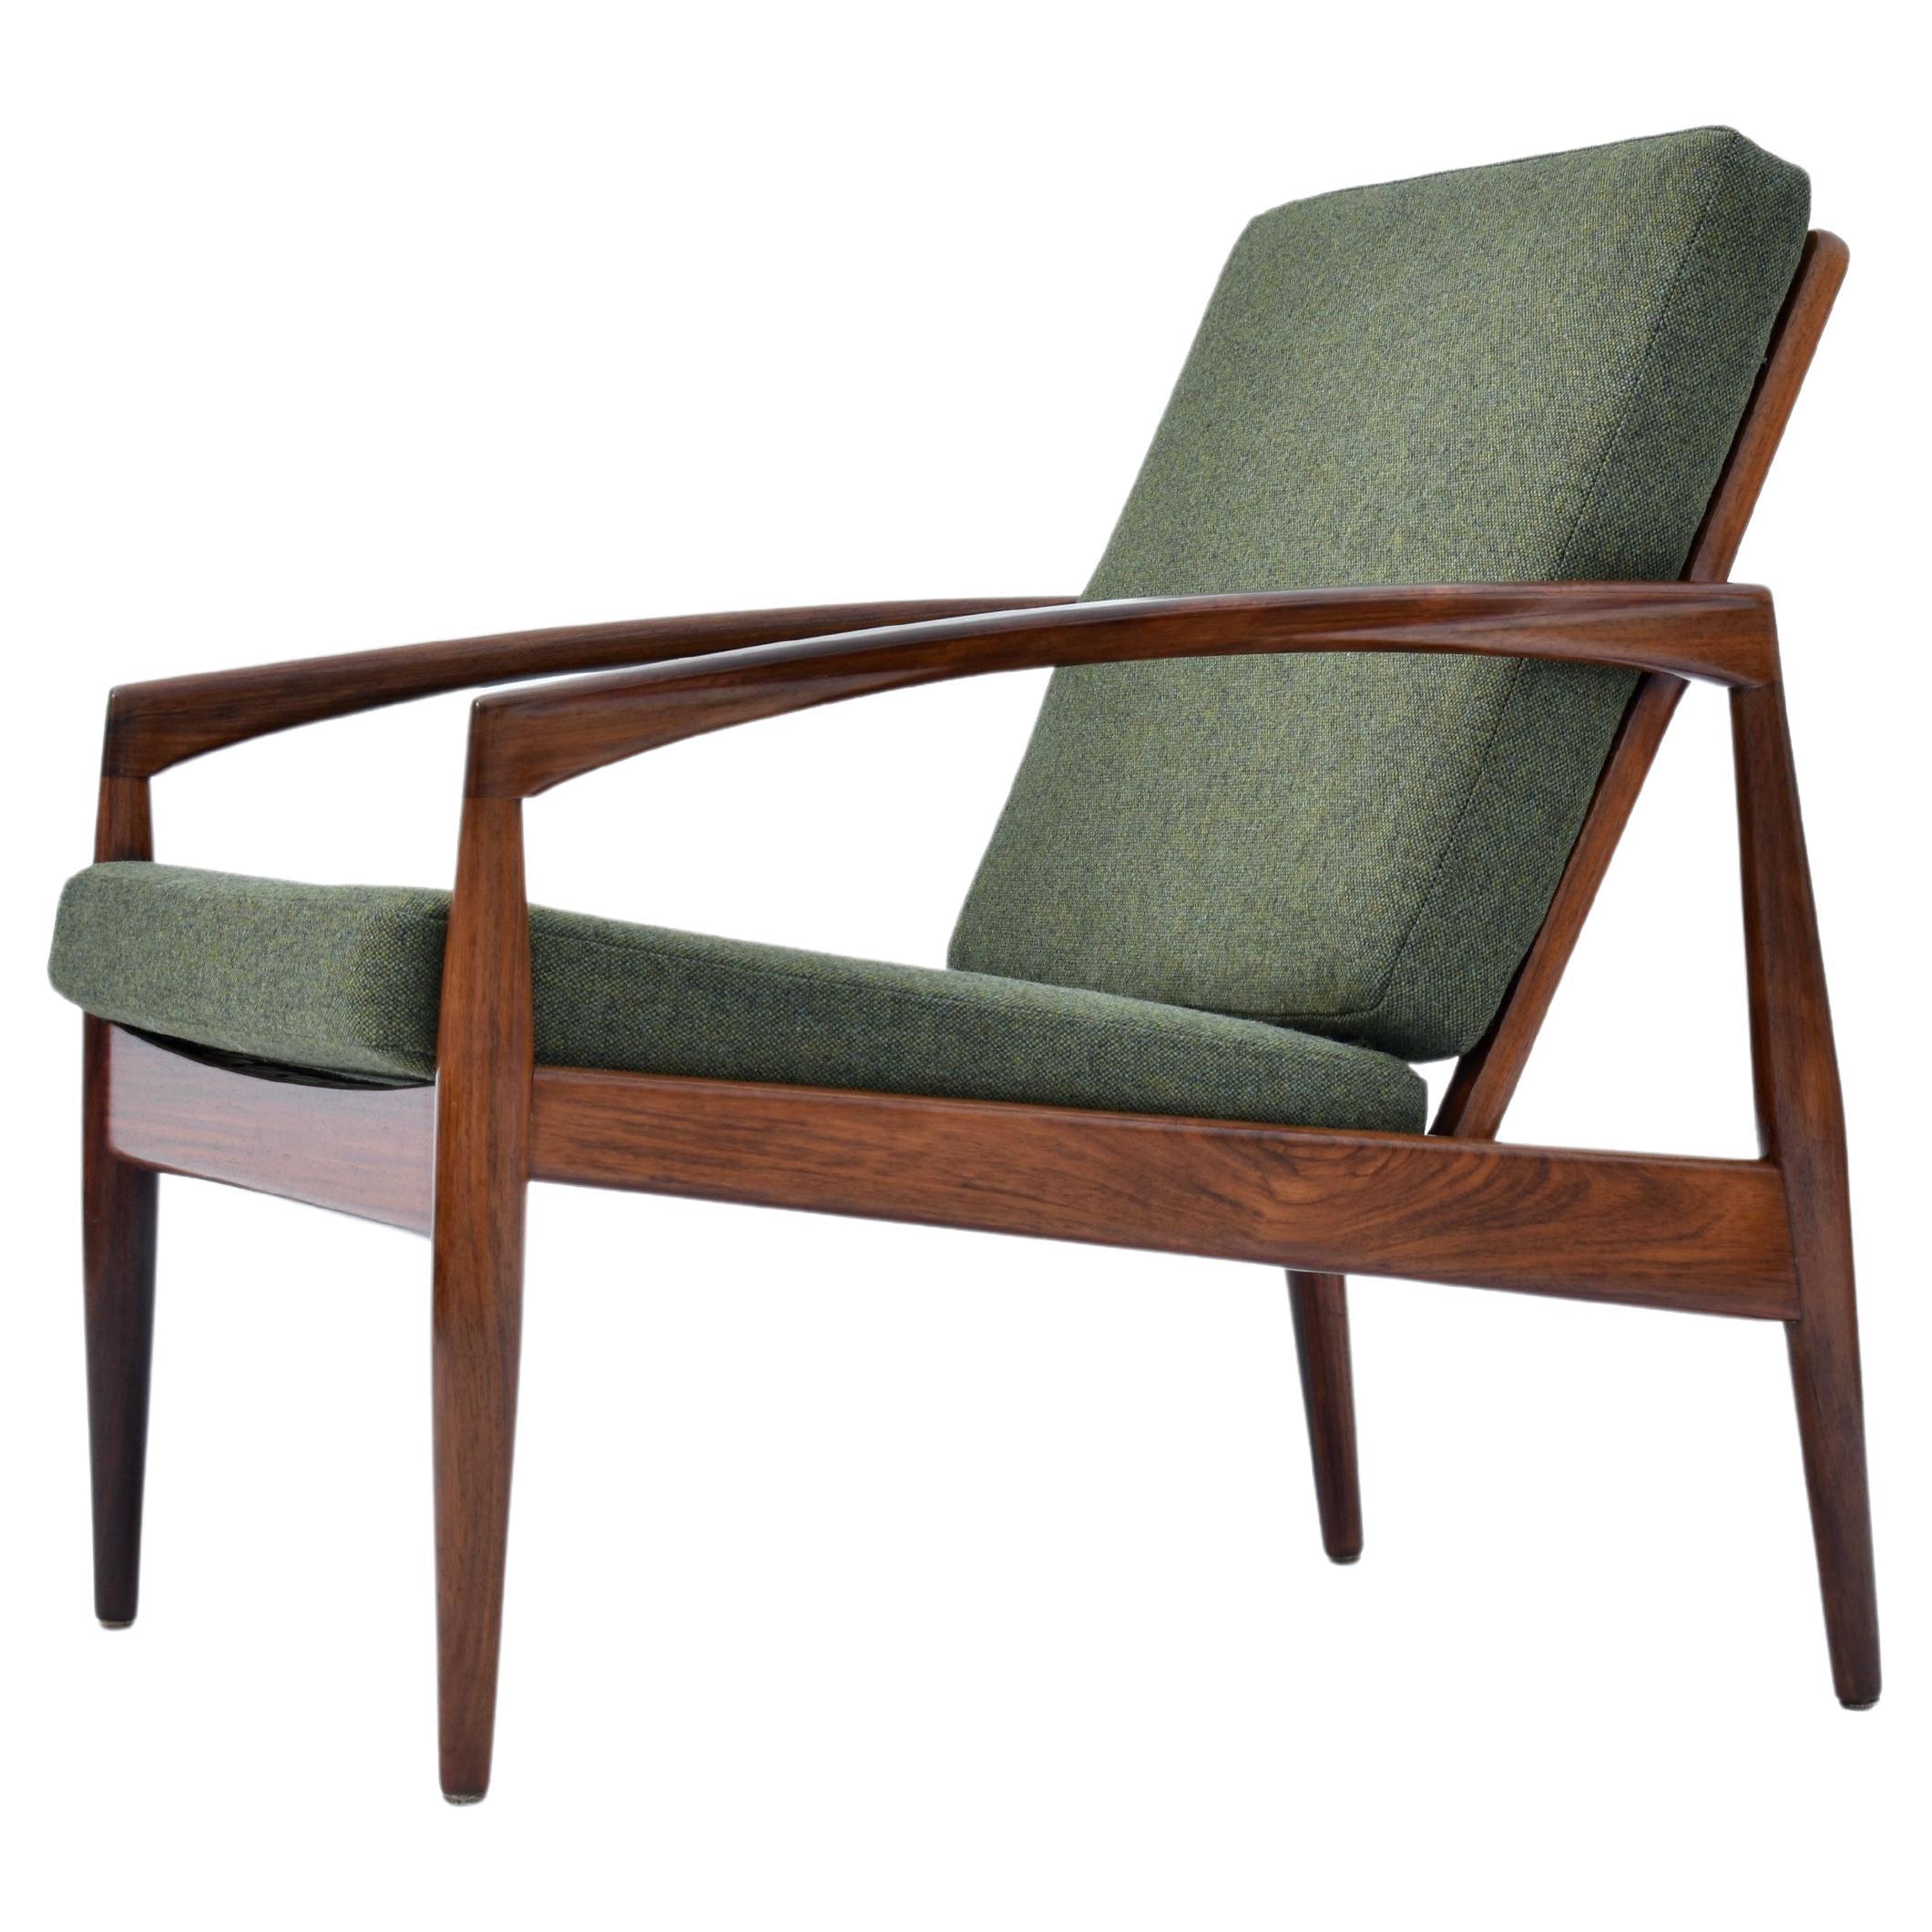 1960s Kai Kristiansen Rosewood Paperknife Chair For Magnus Olesen, Denmark